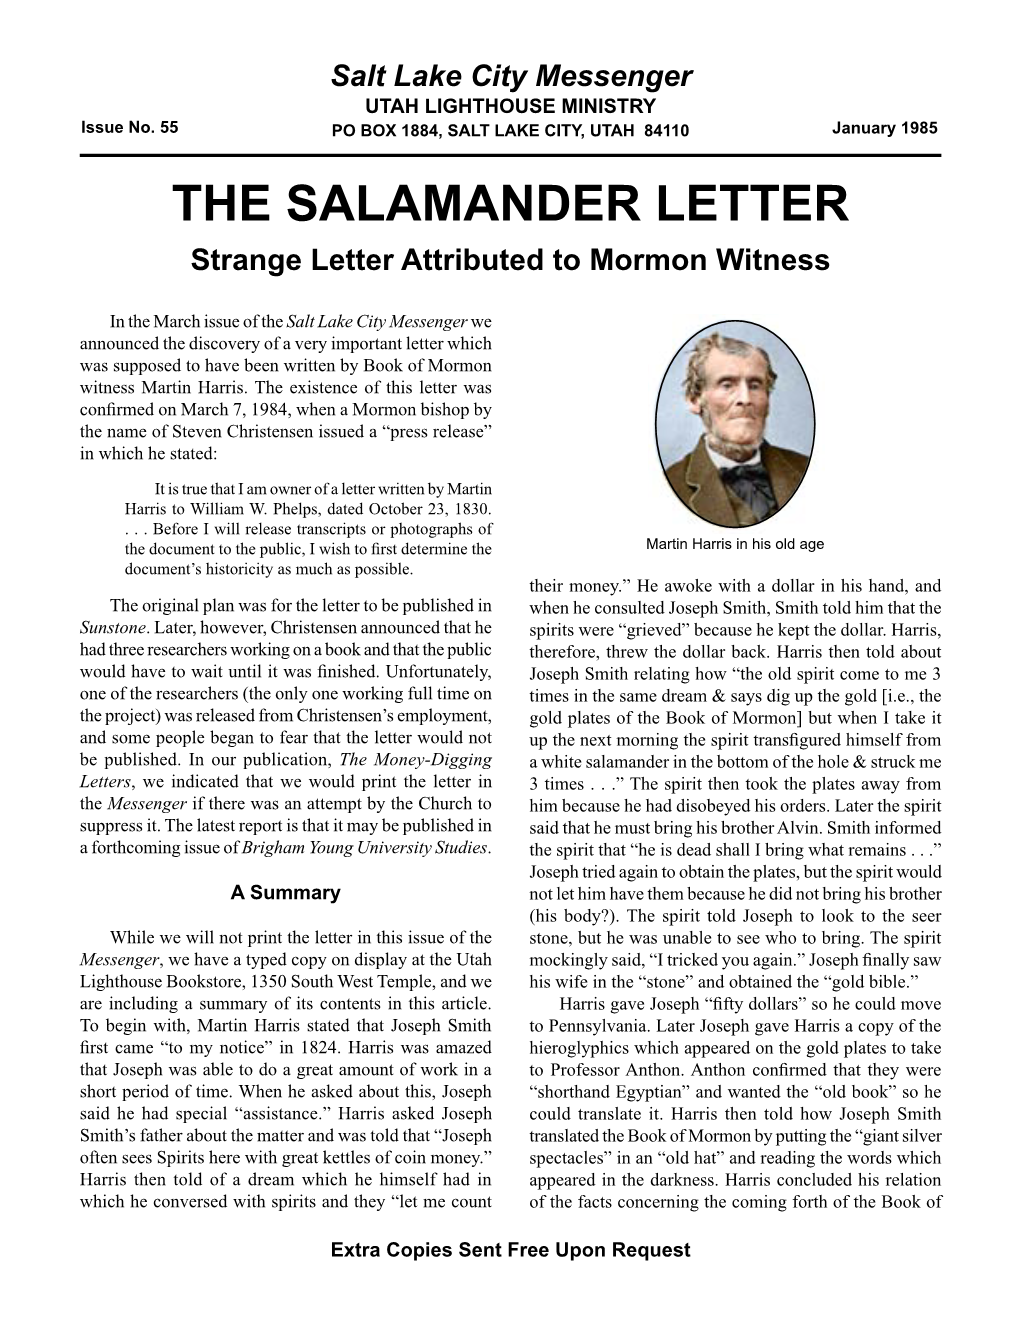 55 Salt Lake City Messenger: the Salamander Letter (PDF)